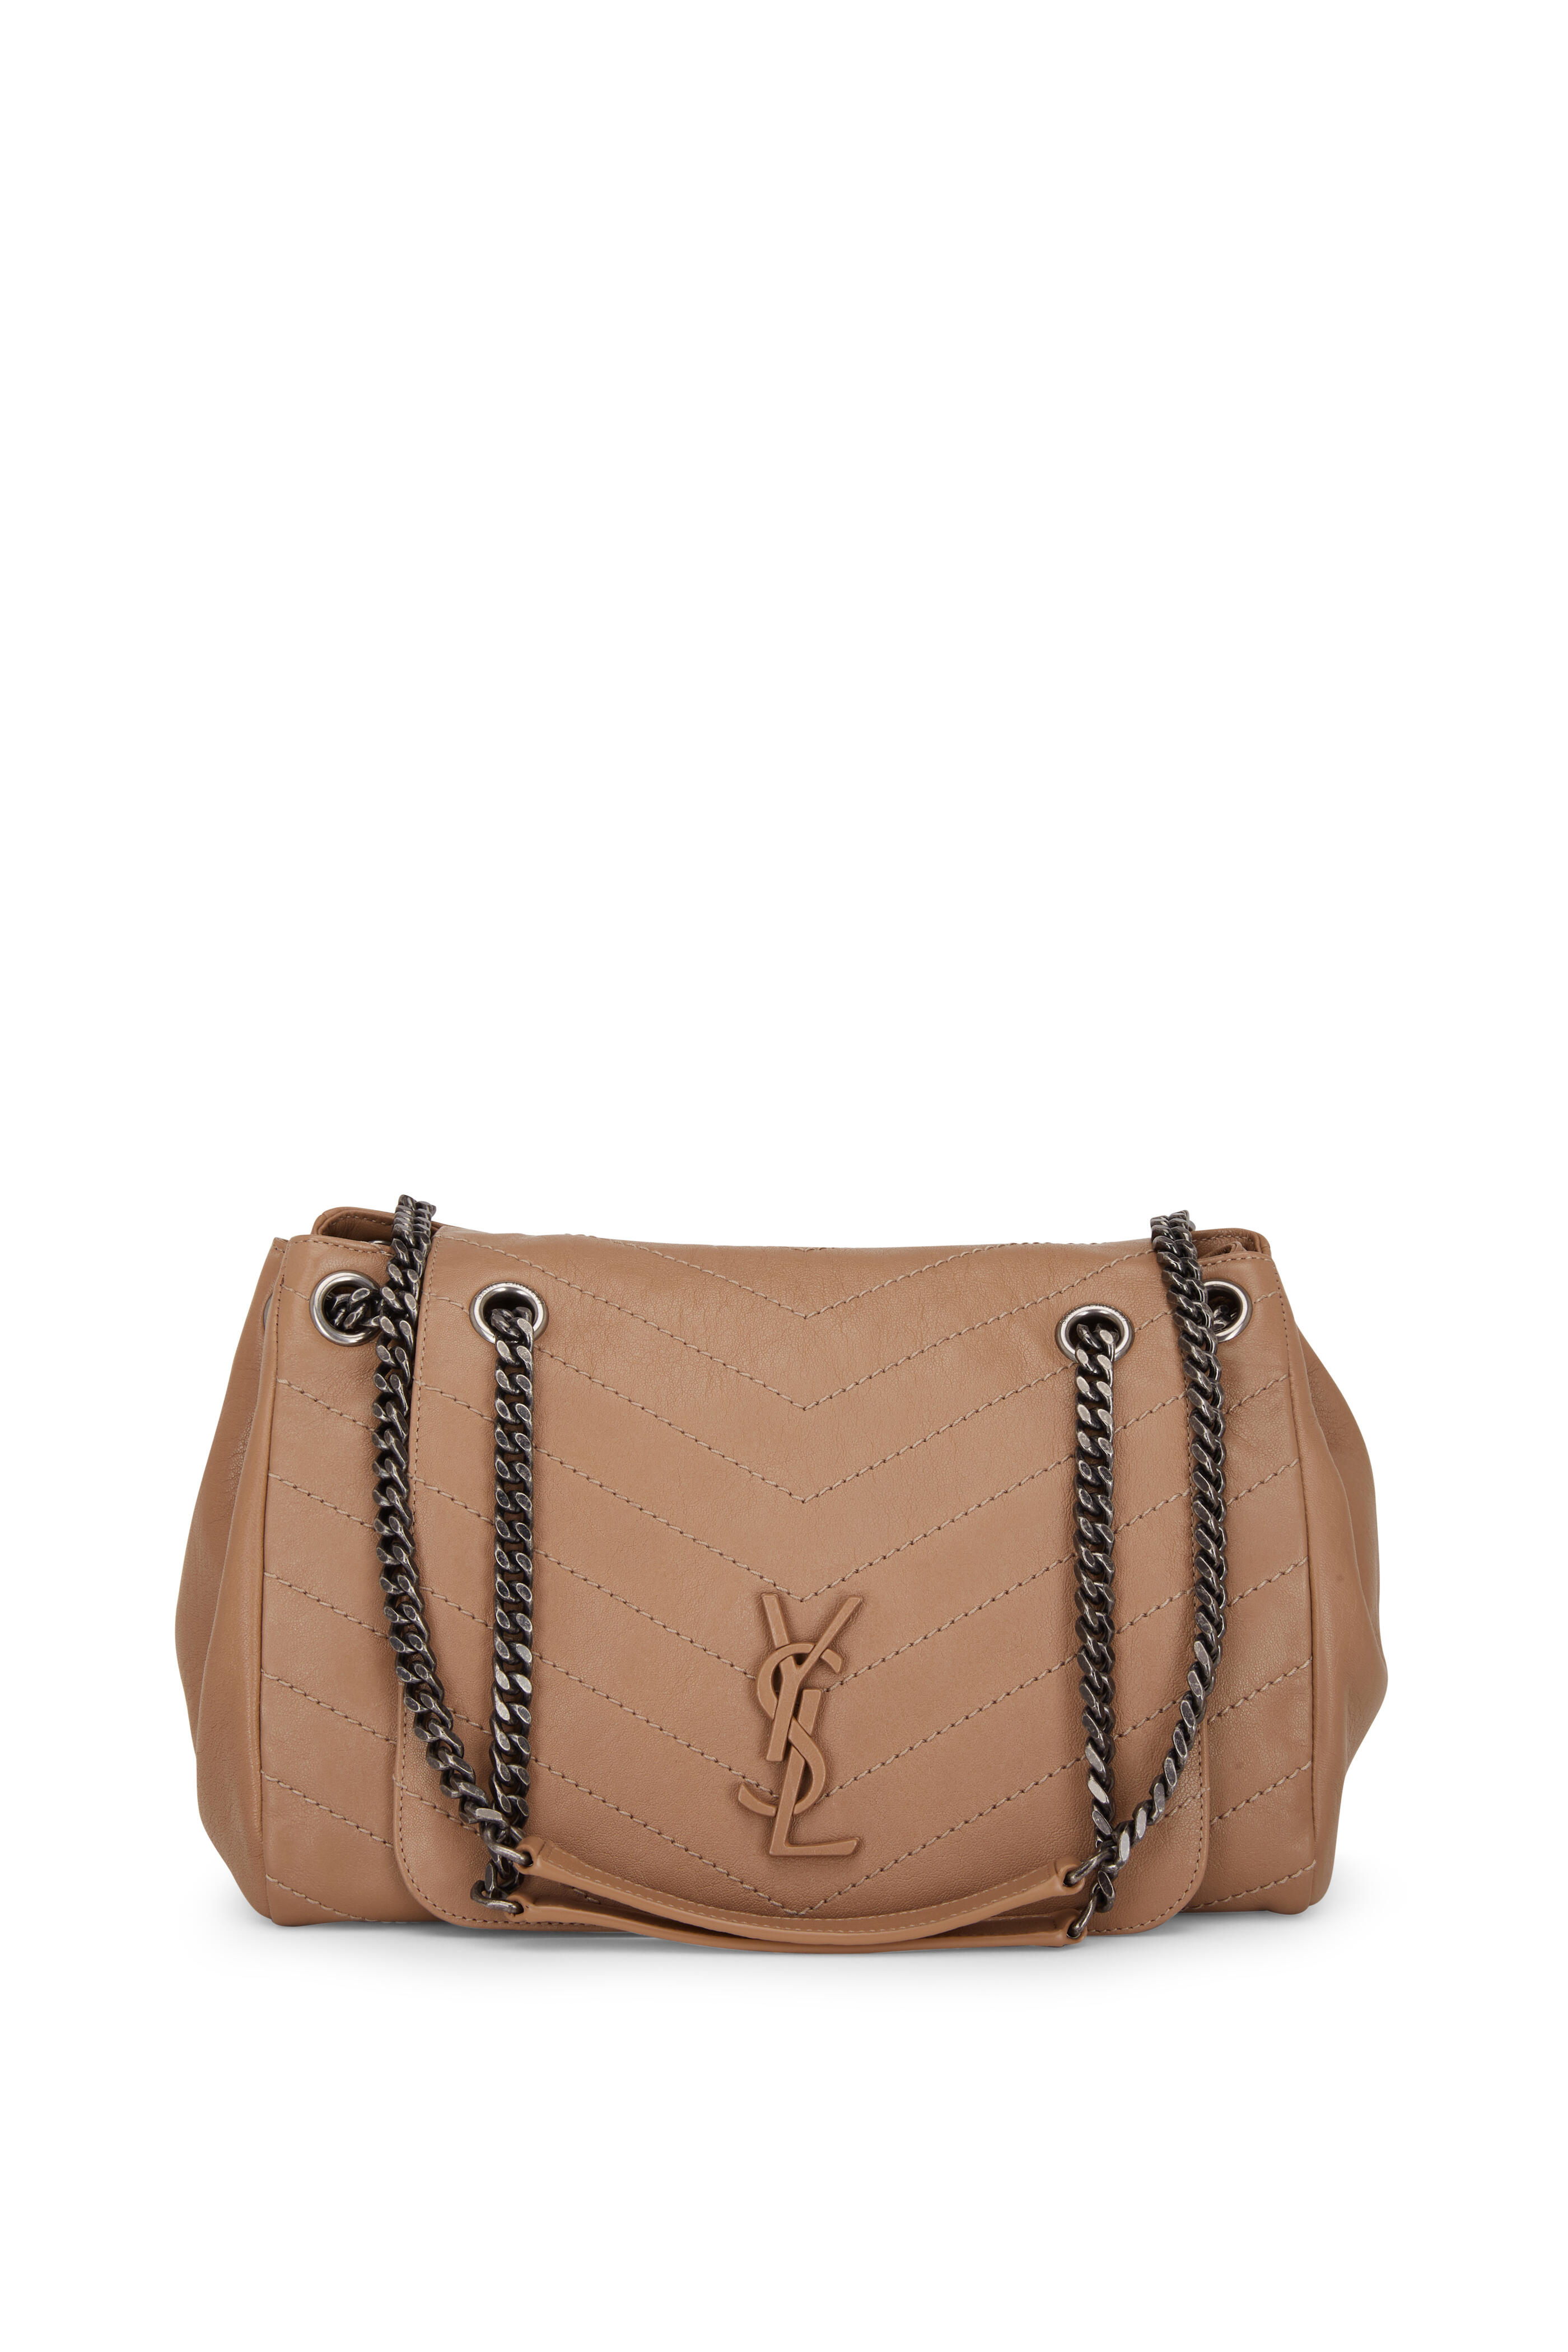 Saint Laurent Nolita Raffia Shoulder Bag